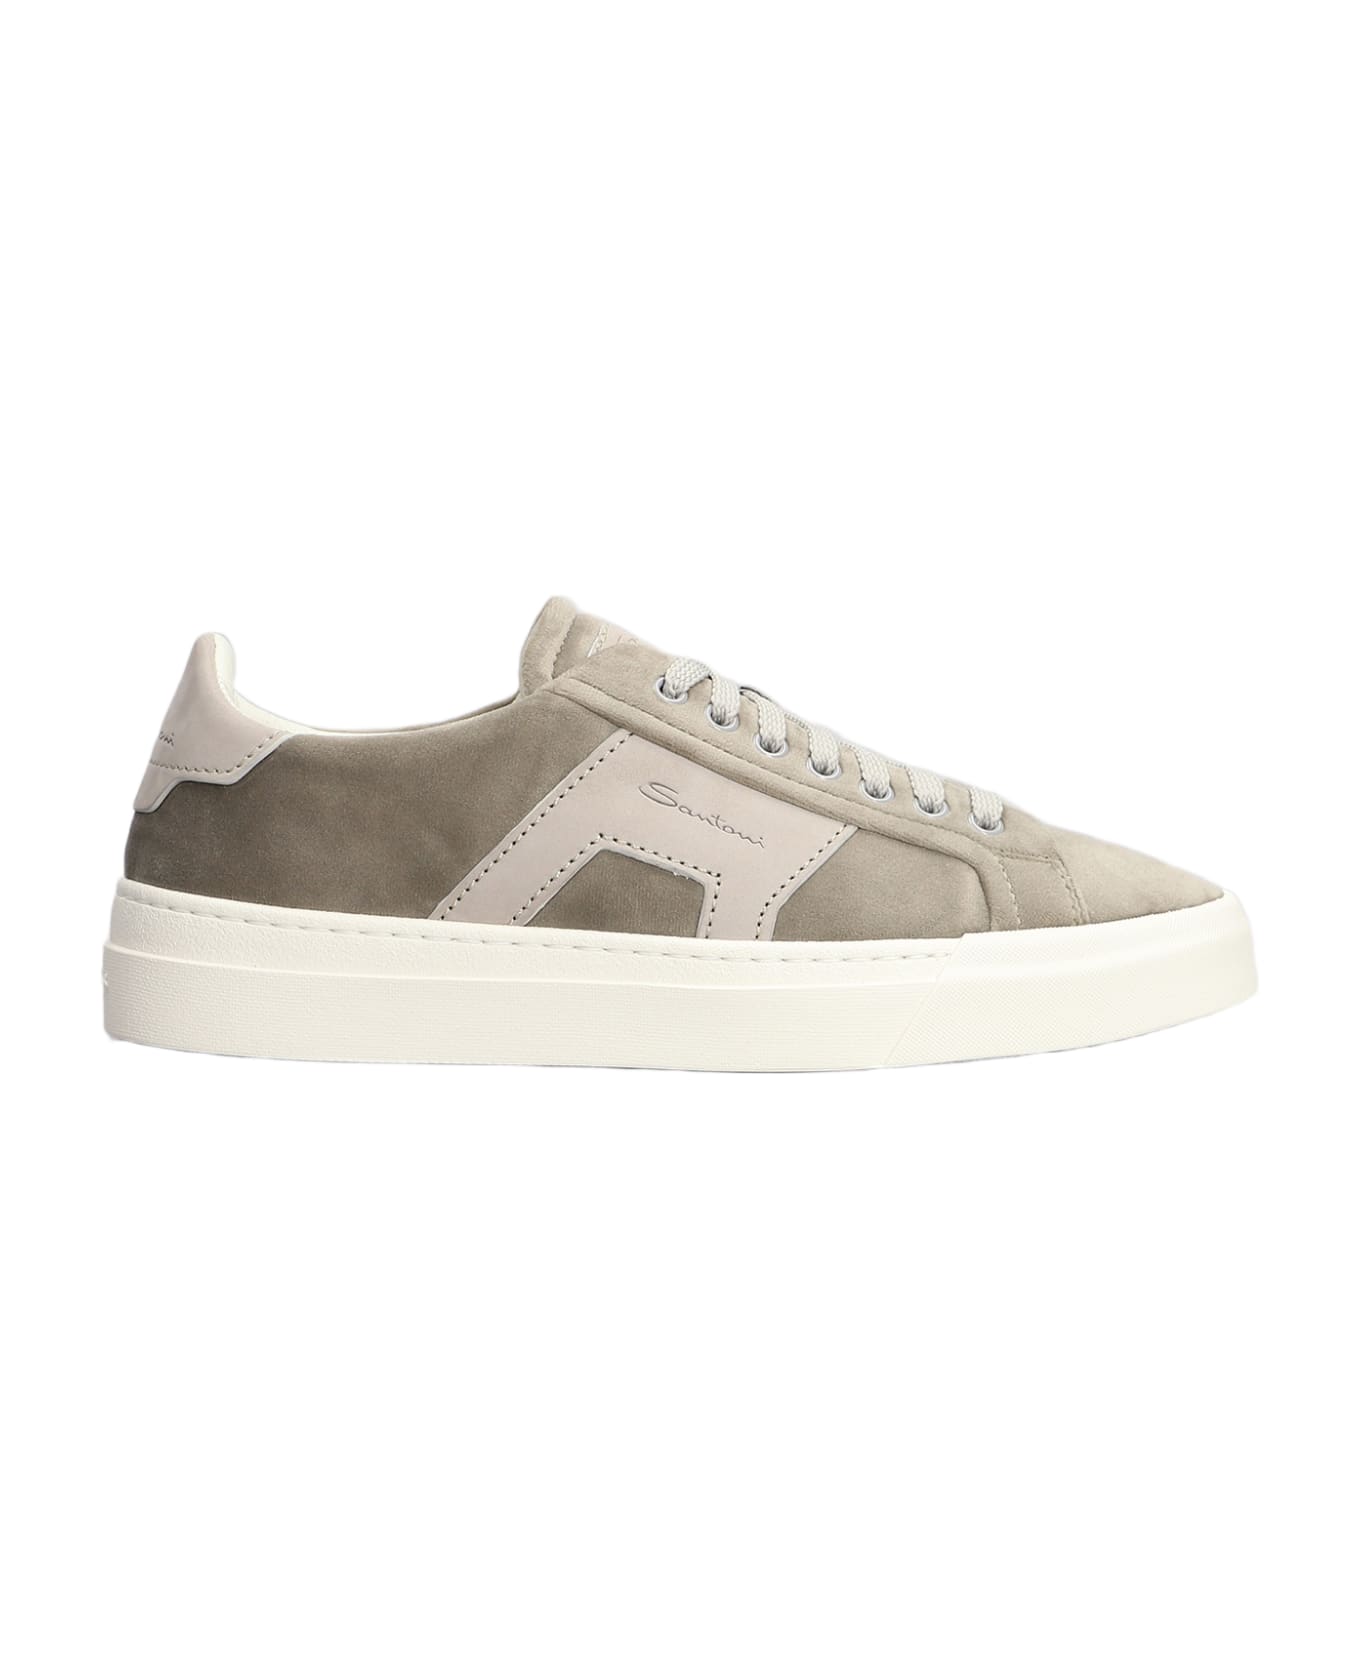 Santoni Dbs1 Sneakers In Grey Suede - grey